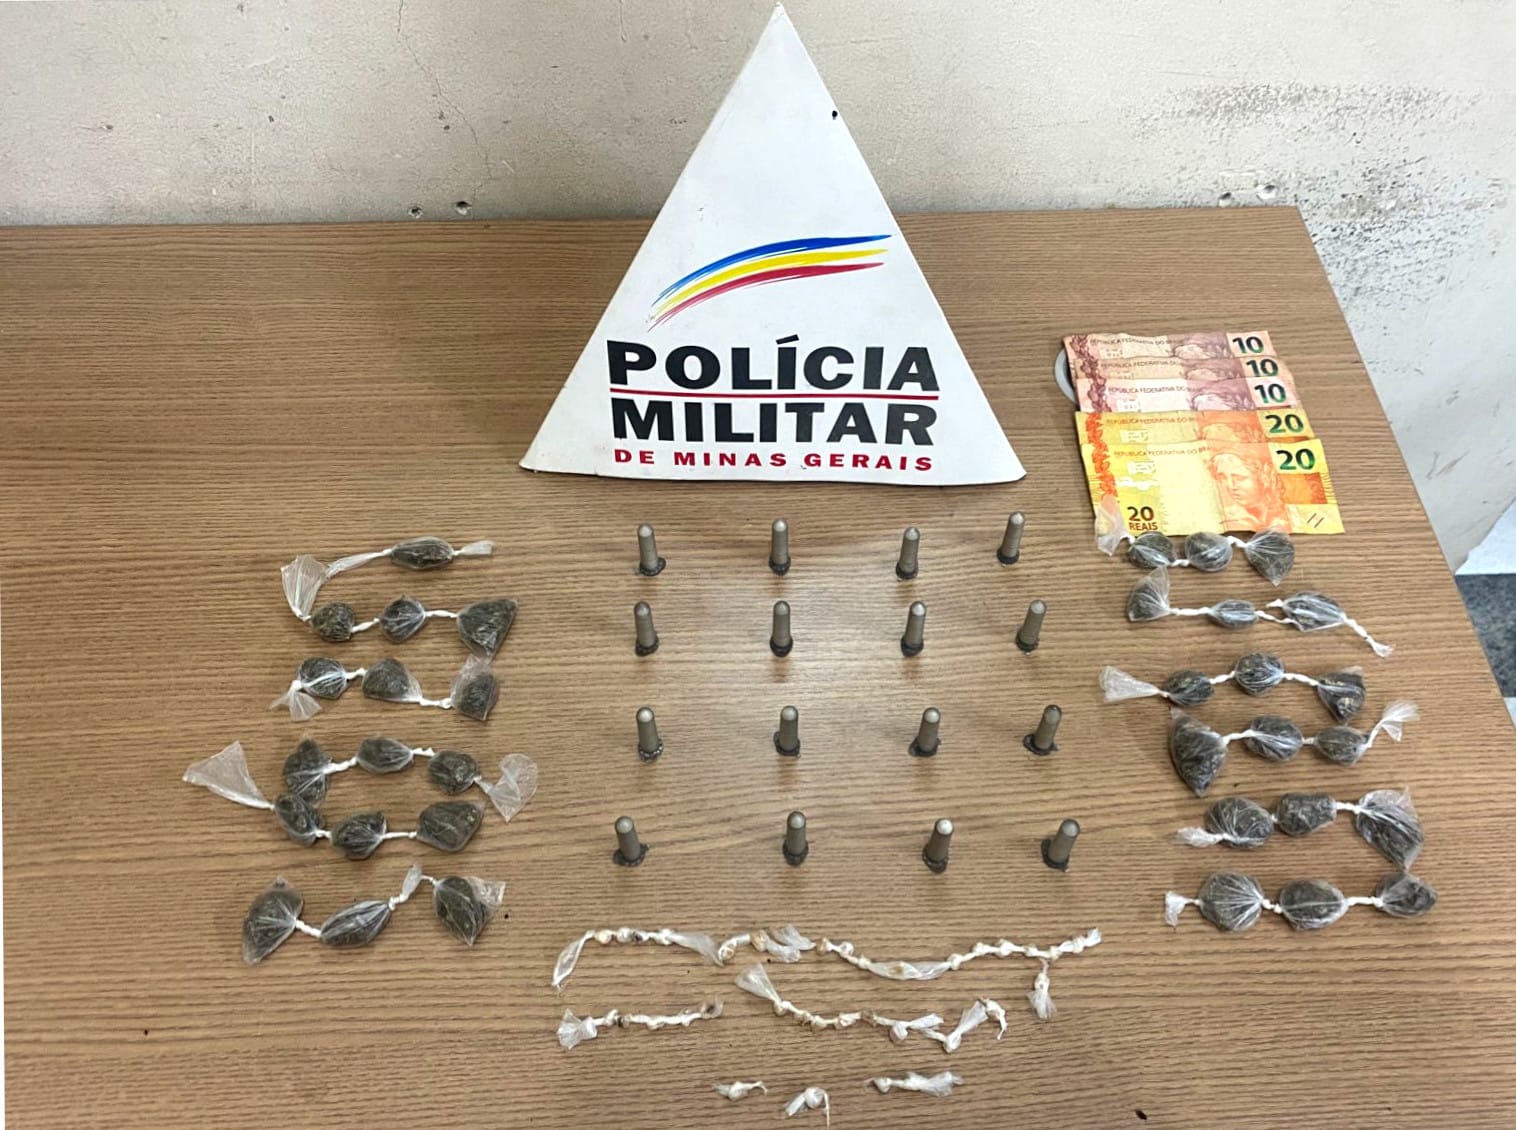 Drogas apreendidas pela Polícia Militar, no dia 15-01-24, no bairro Praia, em Itabirito (MG)
- Crédito: 52º BPM/PMMG
